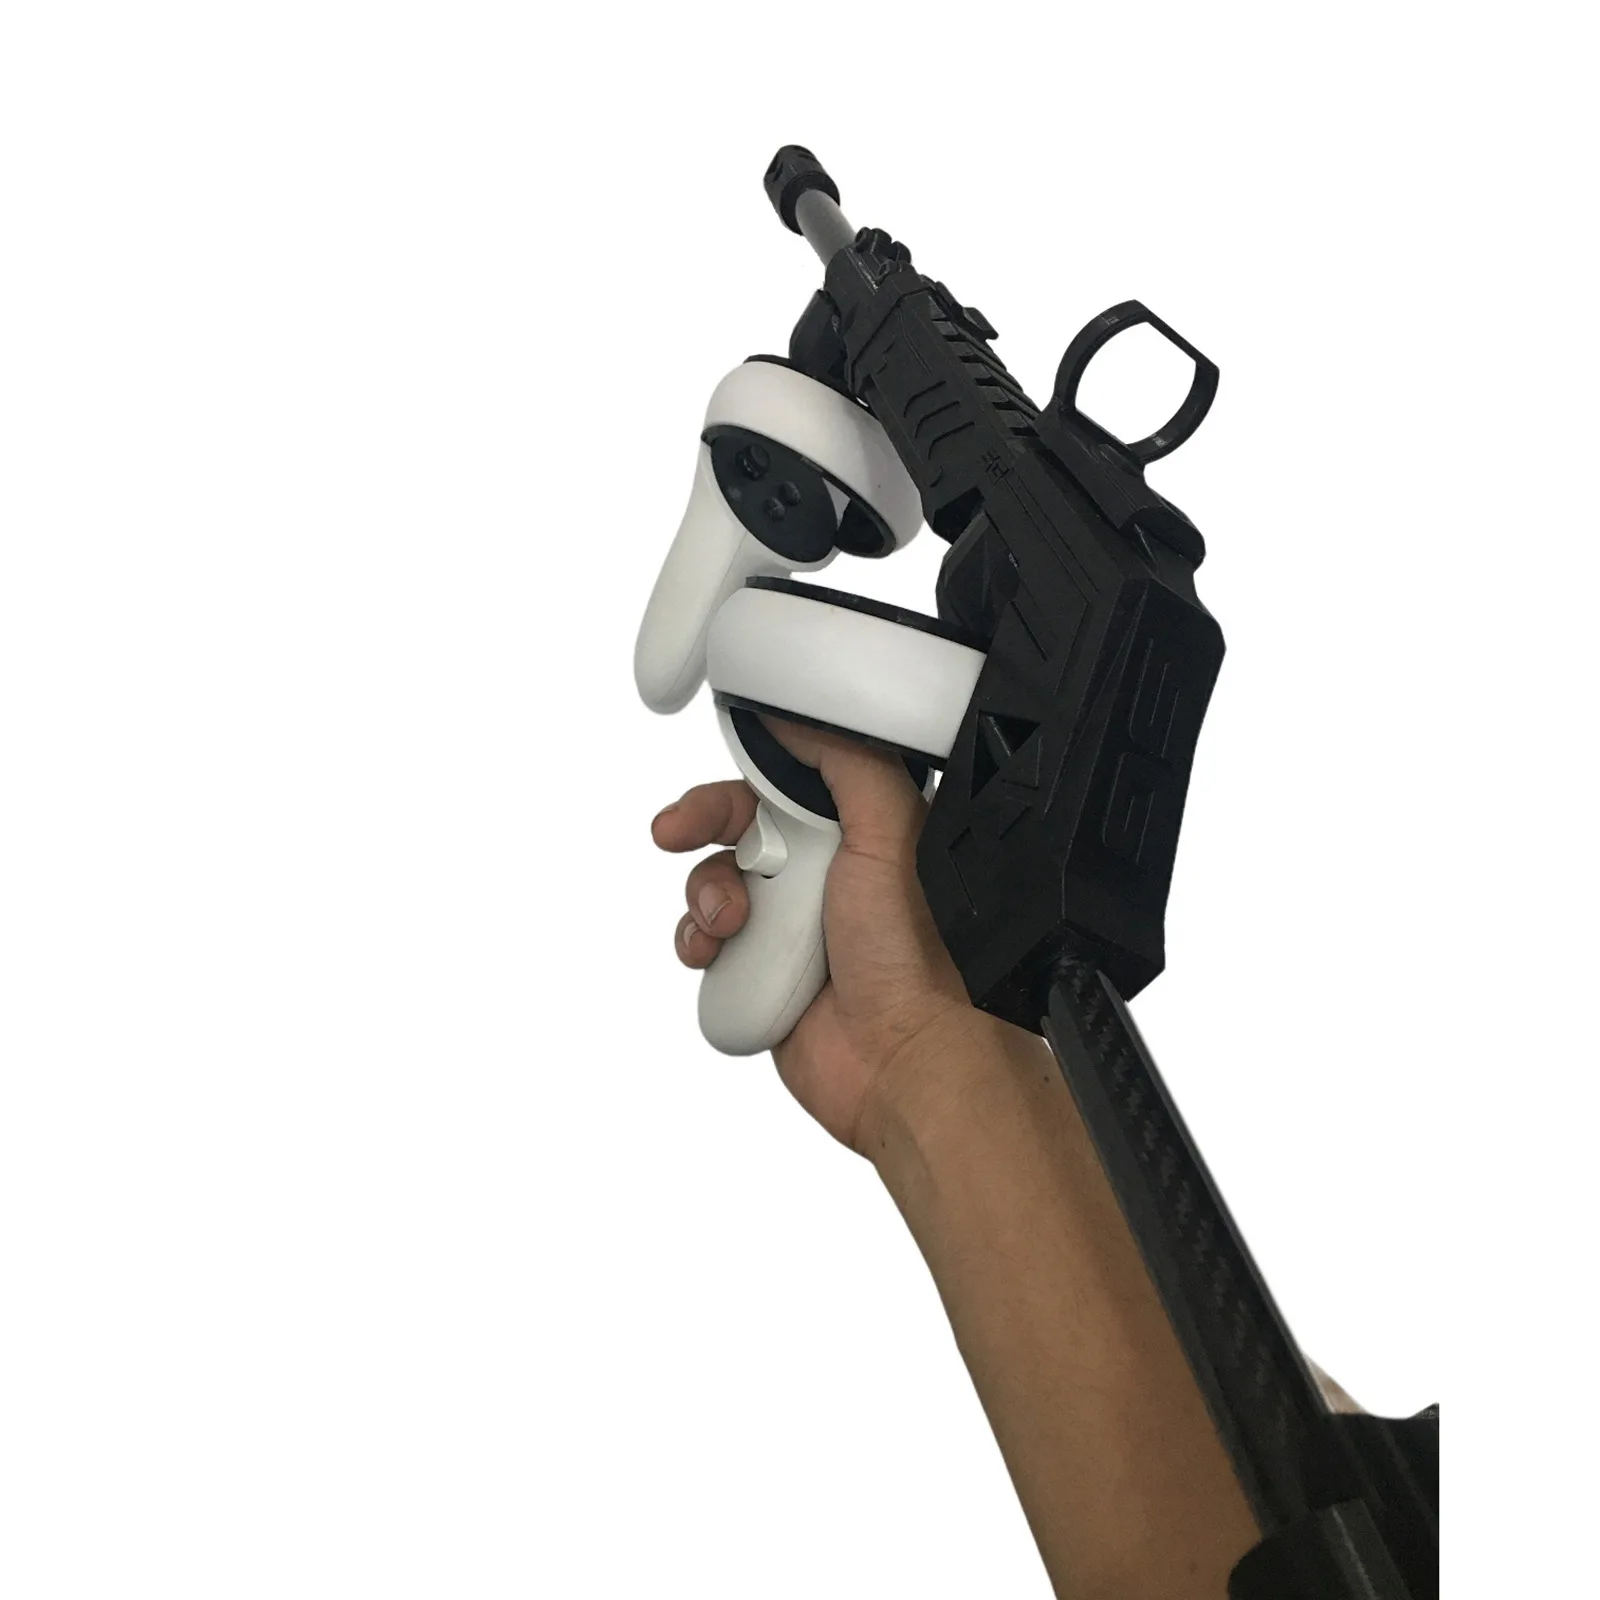 Vr arma de jogo para oculus quest 2 controladores caso de pistola